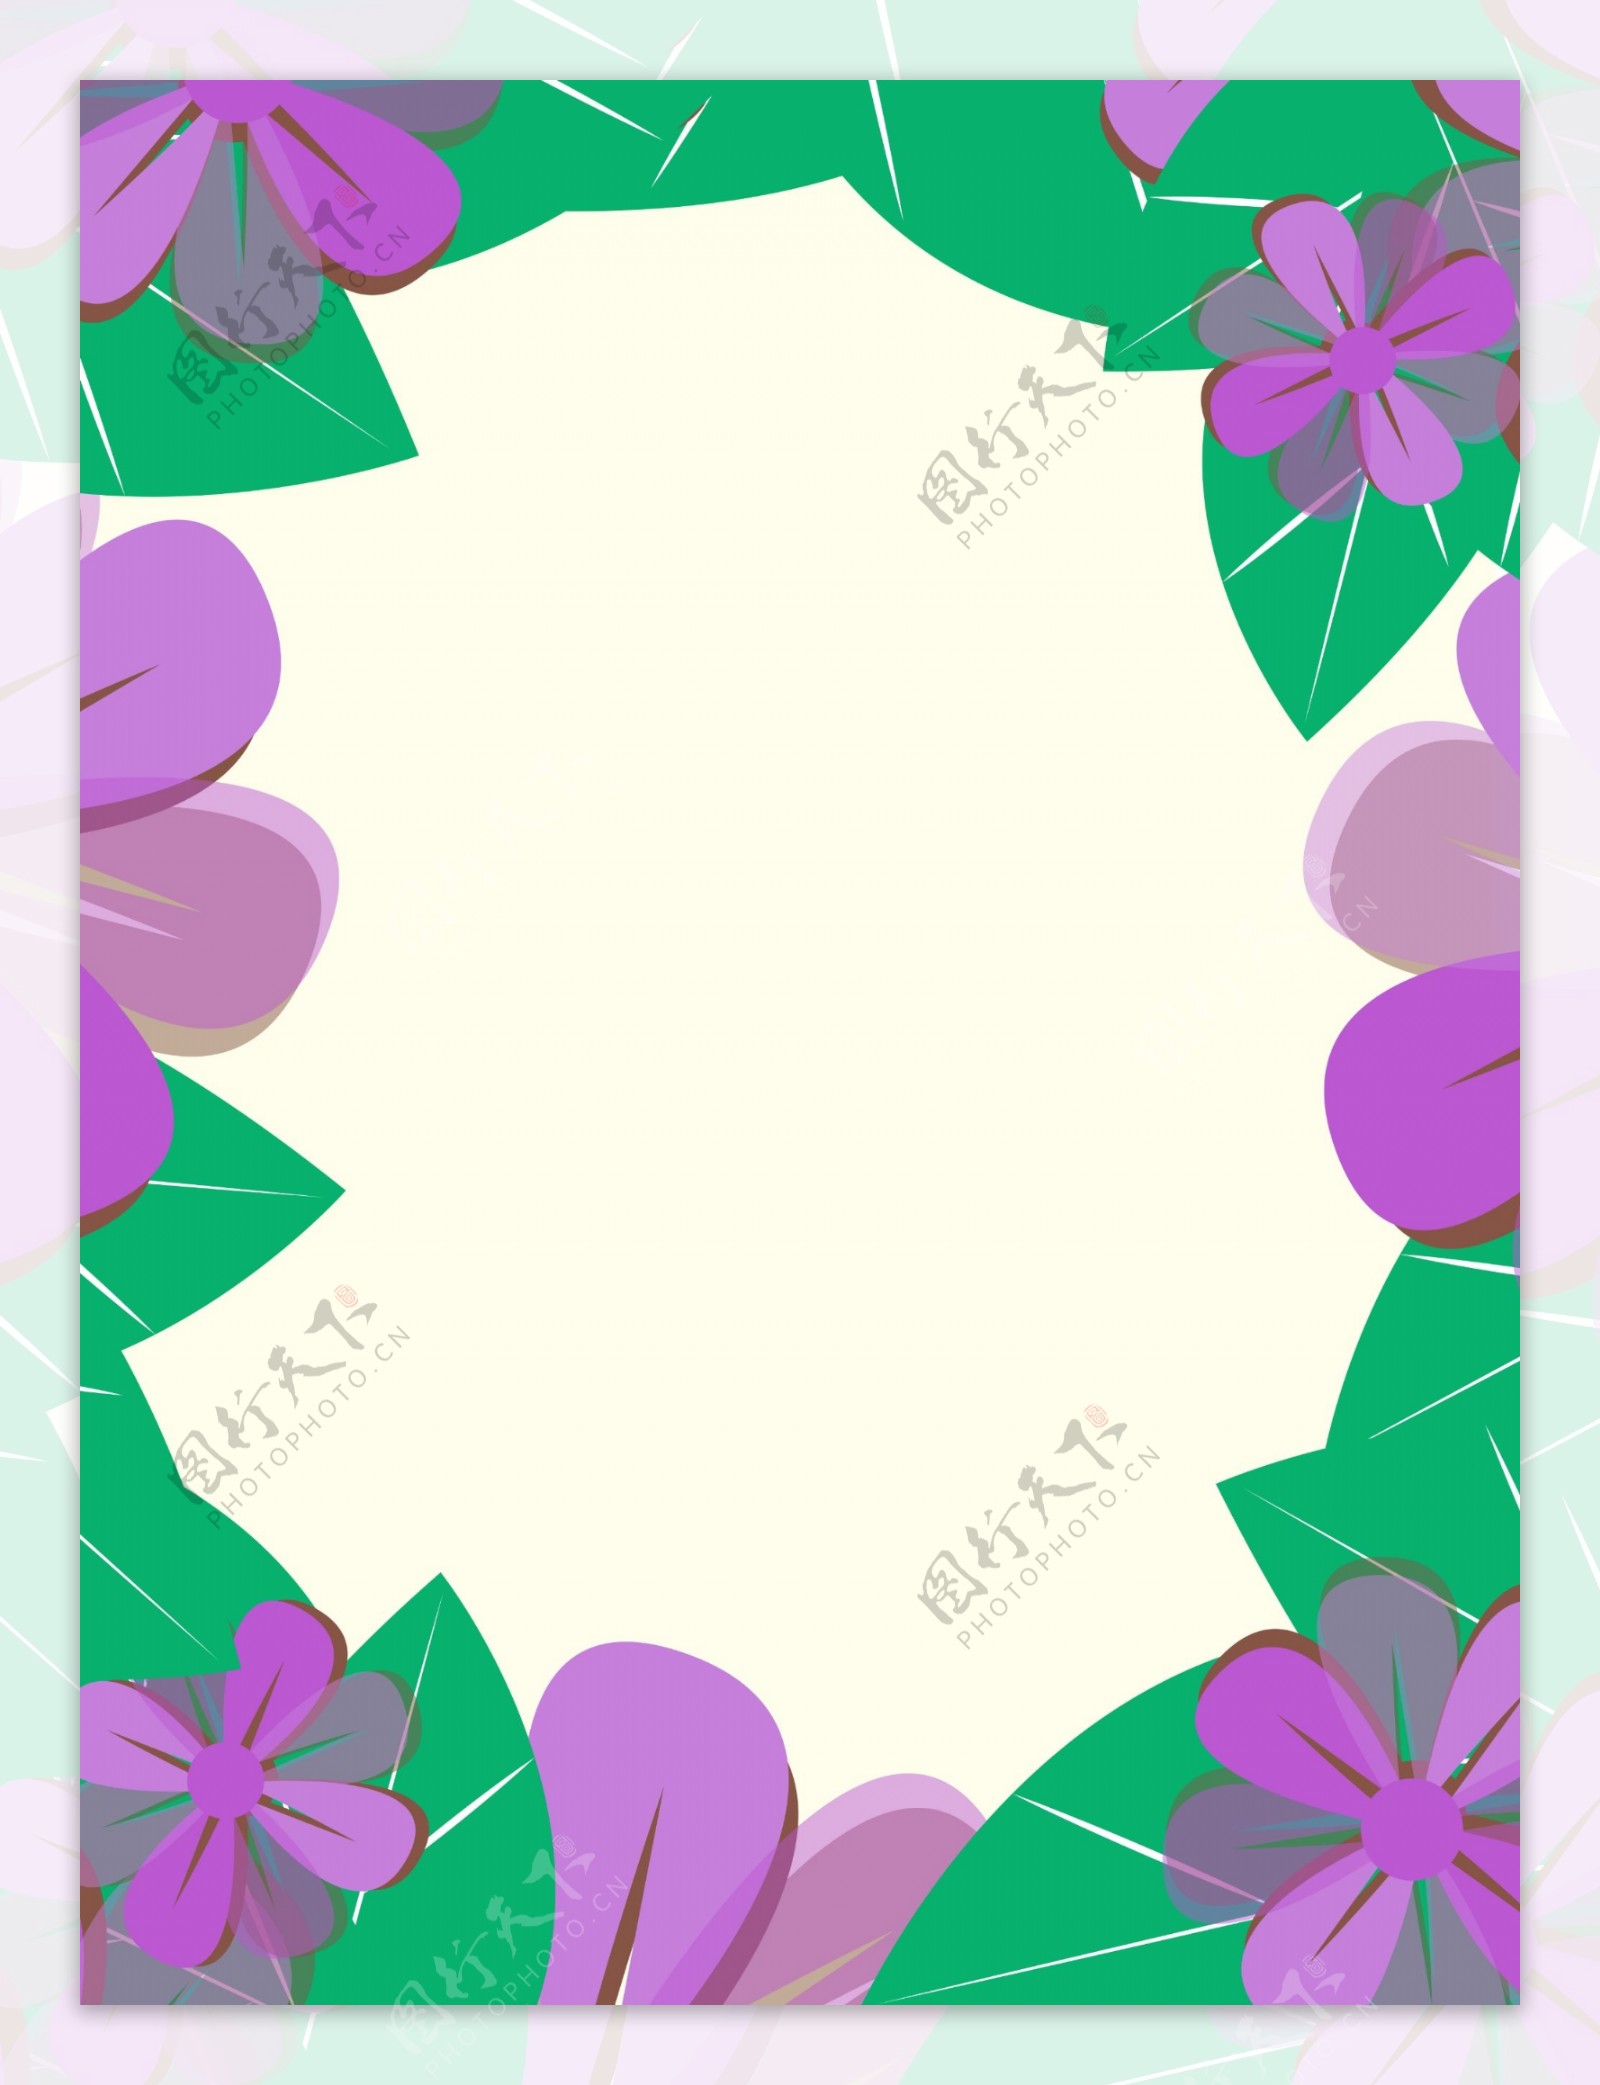 简洁大方紫色叶子边框背景